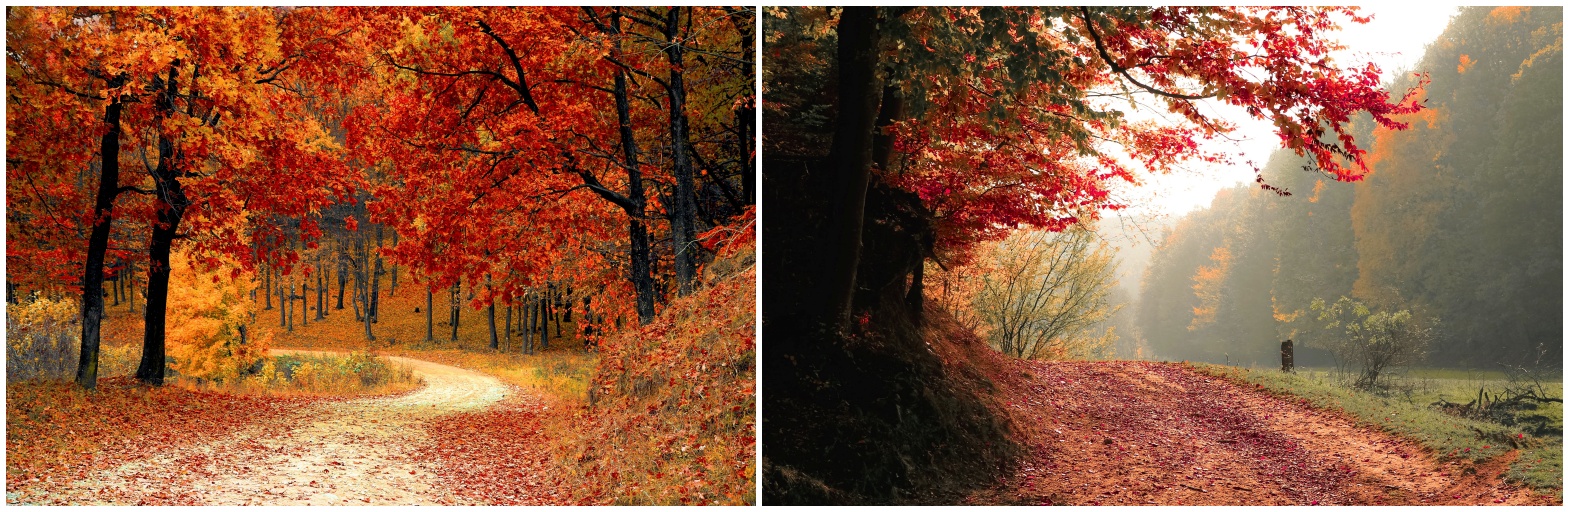 가을사진들 입니다.